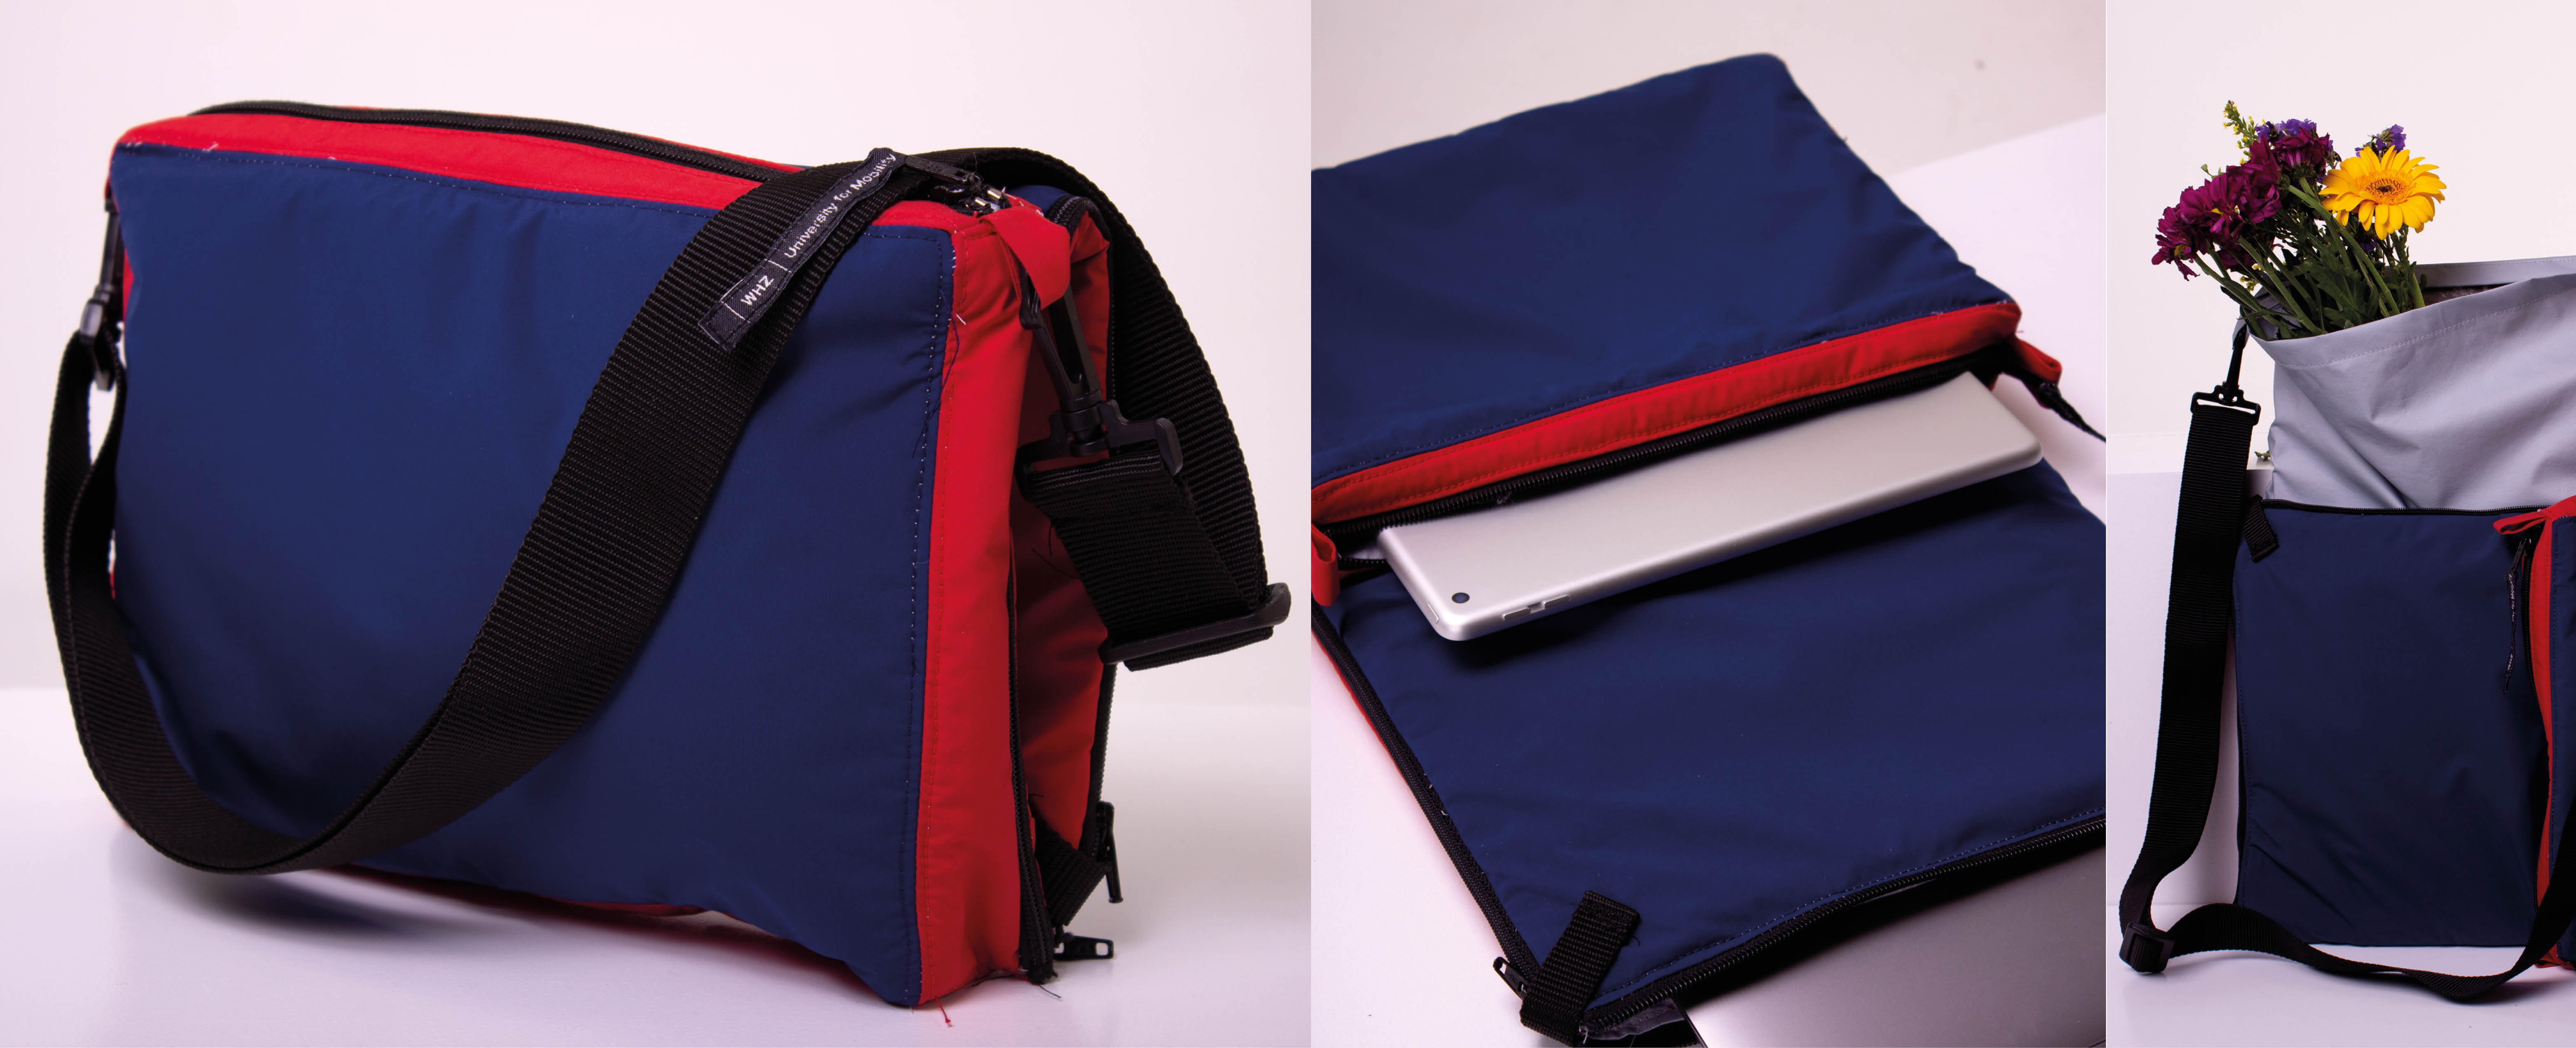 Die Collage zeigt 3 Fotos einer Tasche in den Farben Blau, Rot und Hellgrau. Das Foto in der Mitte zeigt die aufgeklappte Tasche, die auf einer Ablage liegt. Auf dem Foto rechts sieht man eine Nahaufnahme der Tasche mit Sommerblumen.